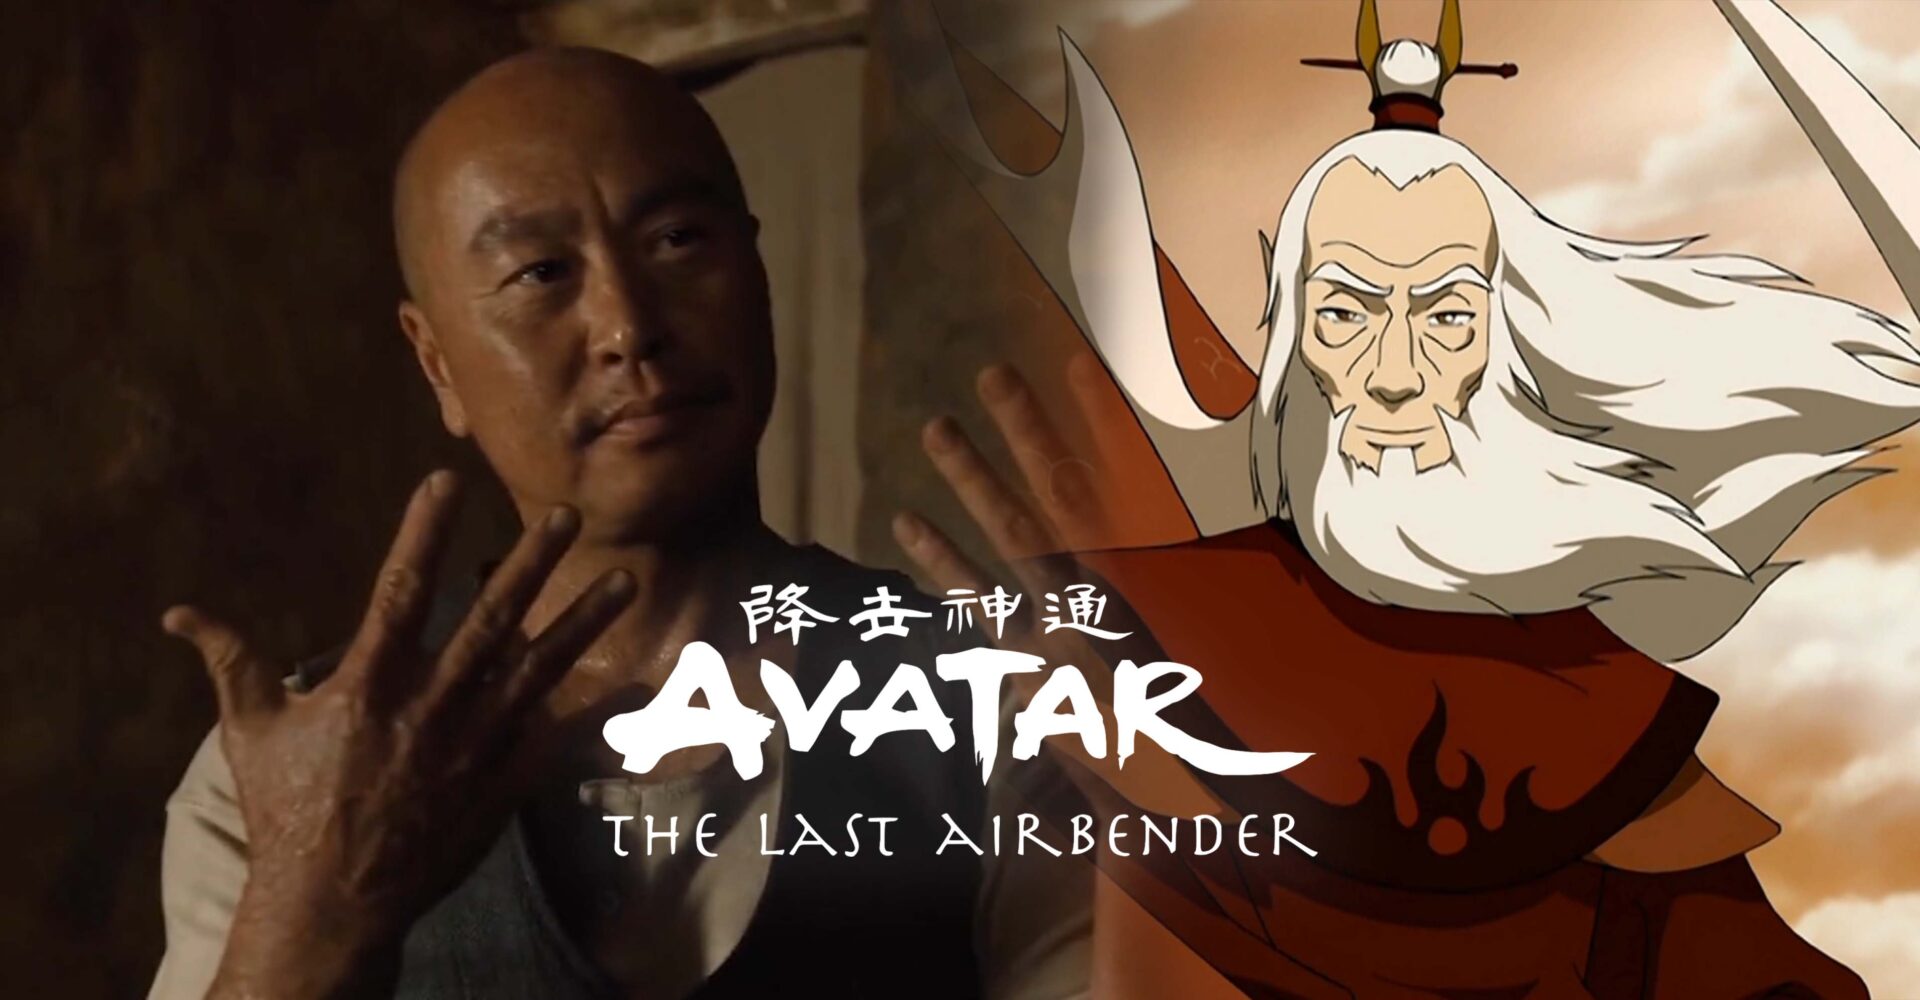 Avatar Rokus Backstory  Full Scene  Avatar The Last Airbender  YouTube